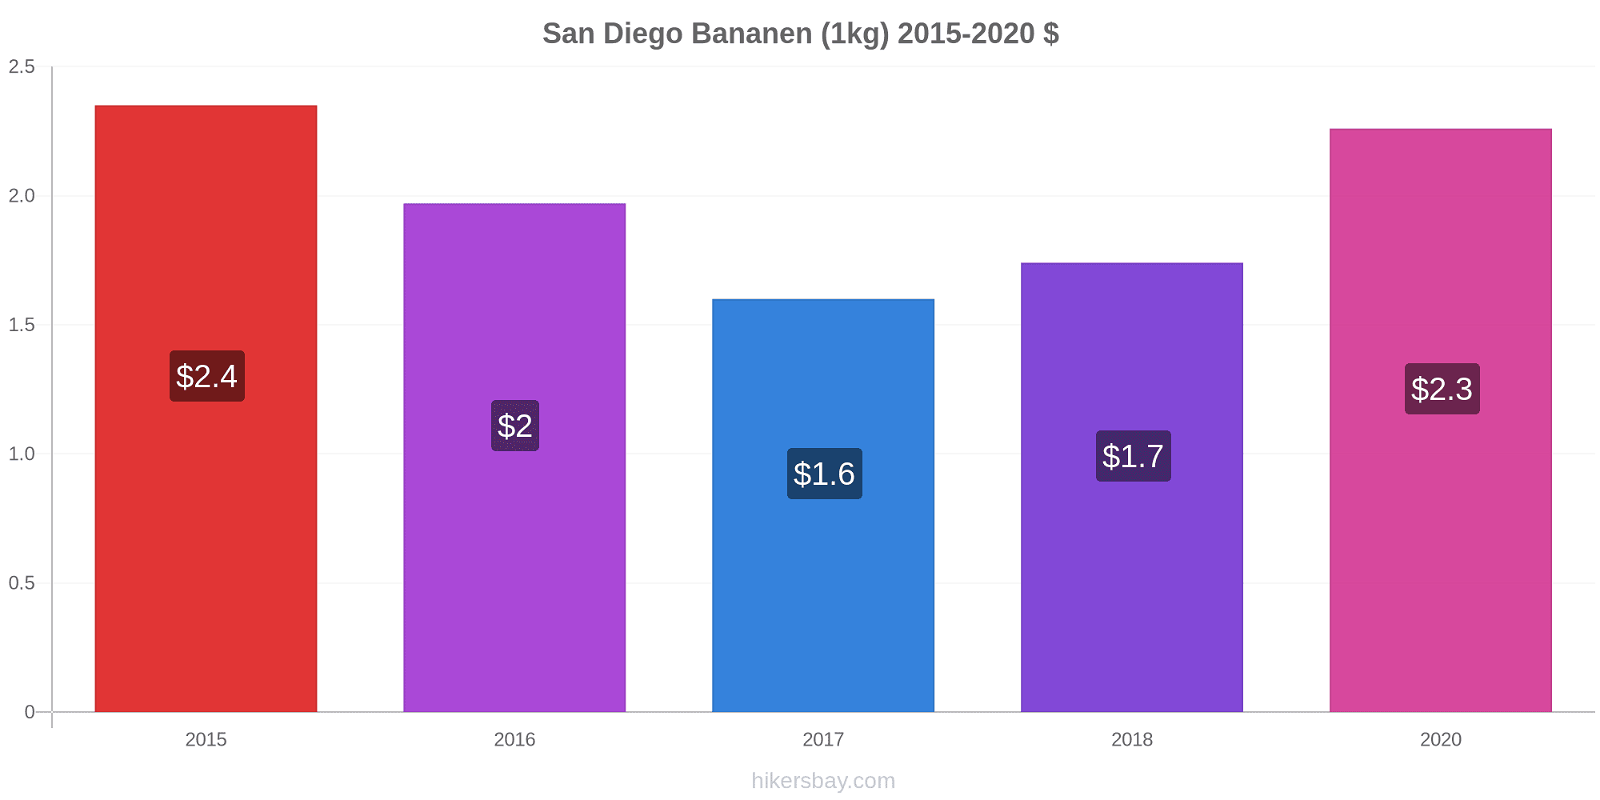 San Diego Preisänderungen Banane (1kg) hikersbay.com